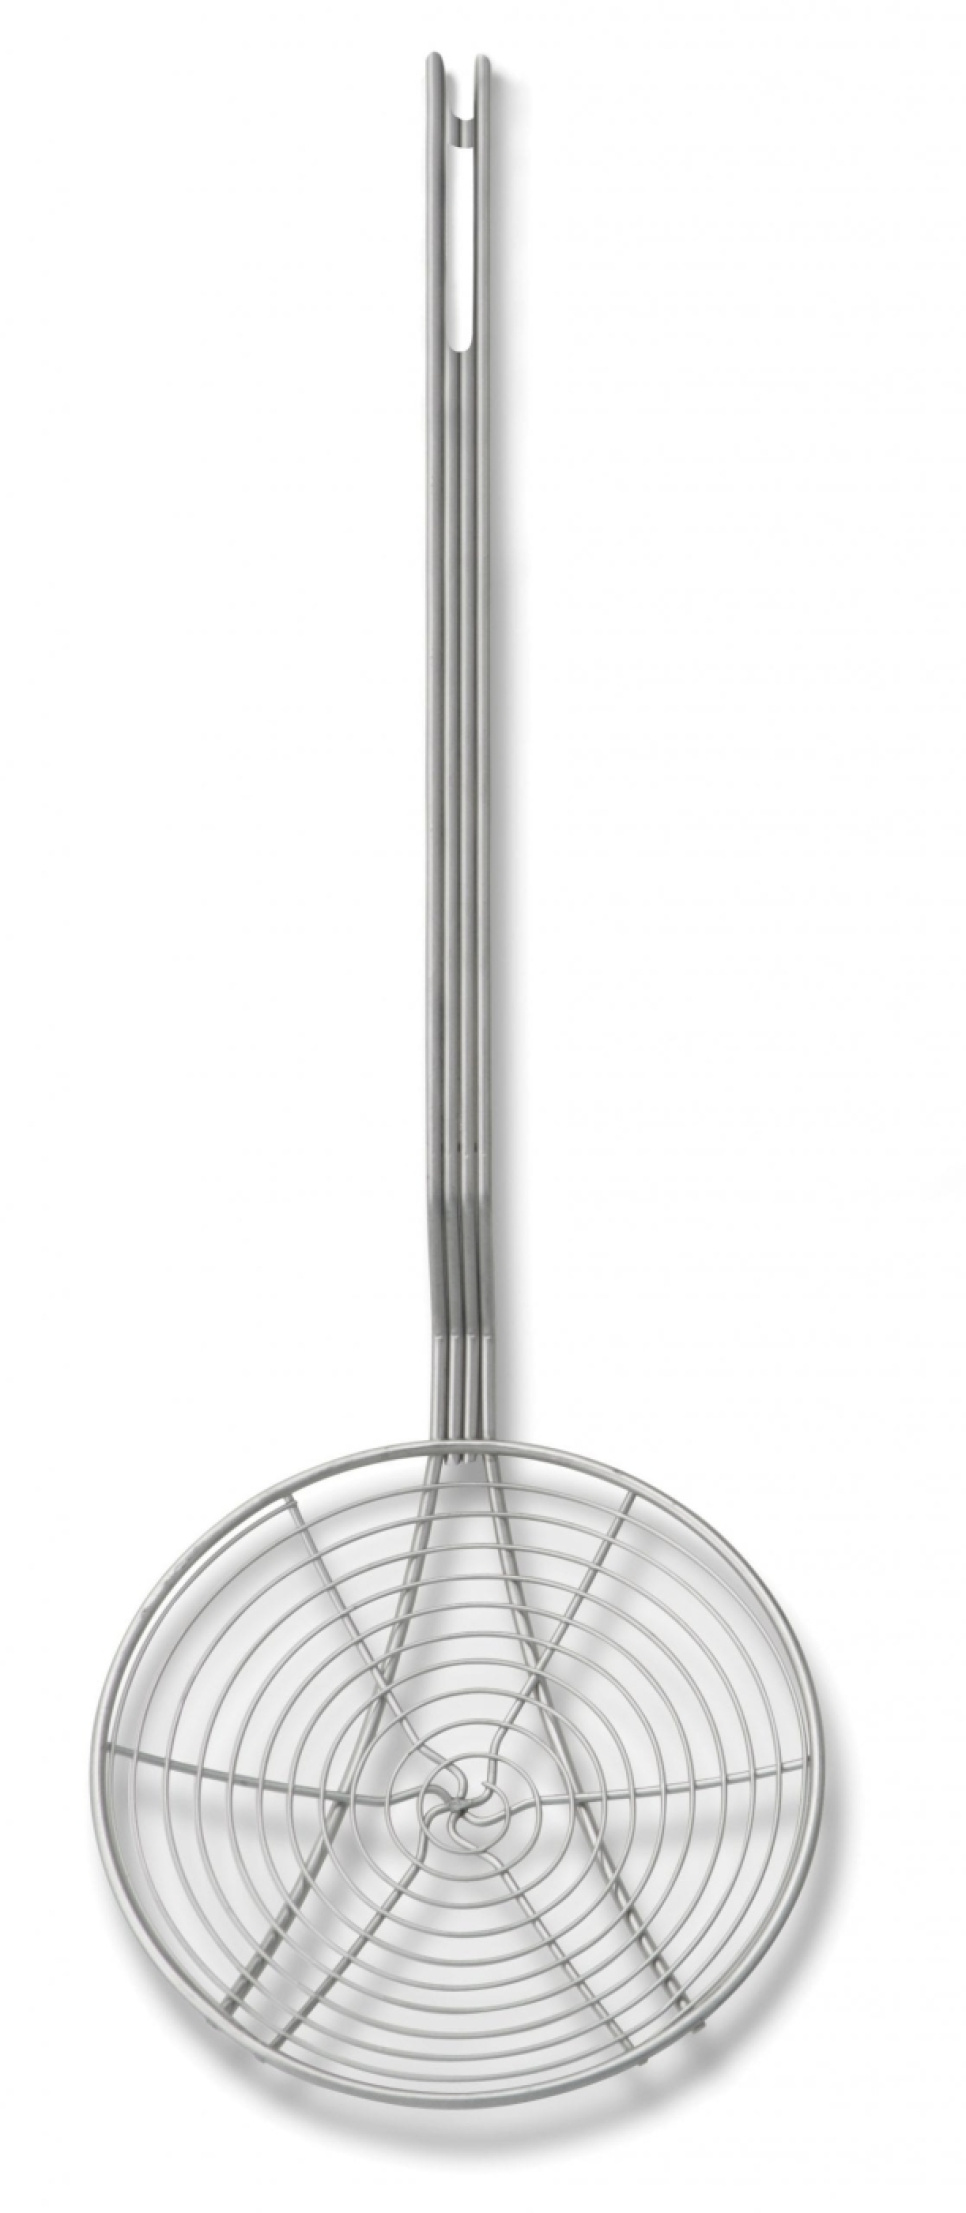 Chochla cedzakowa, średnica 18 cm - Exxent w grupie Gotowanie / Przybory kuchenne / Chochle i łyżki w The Kitchen Lab (1071-10162)